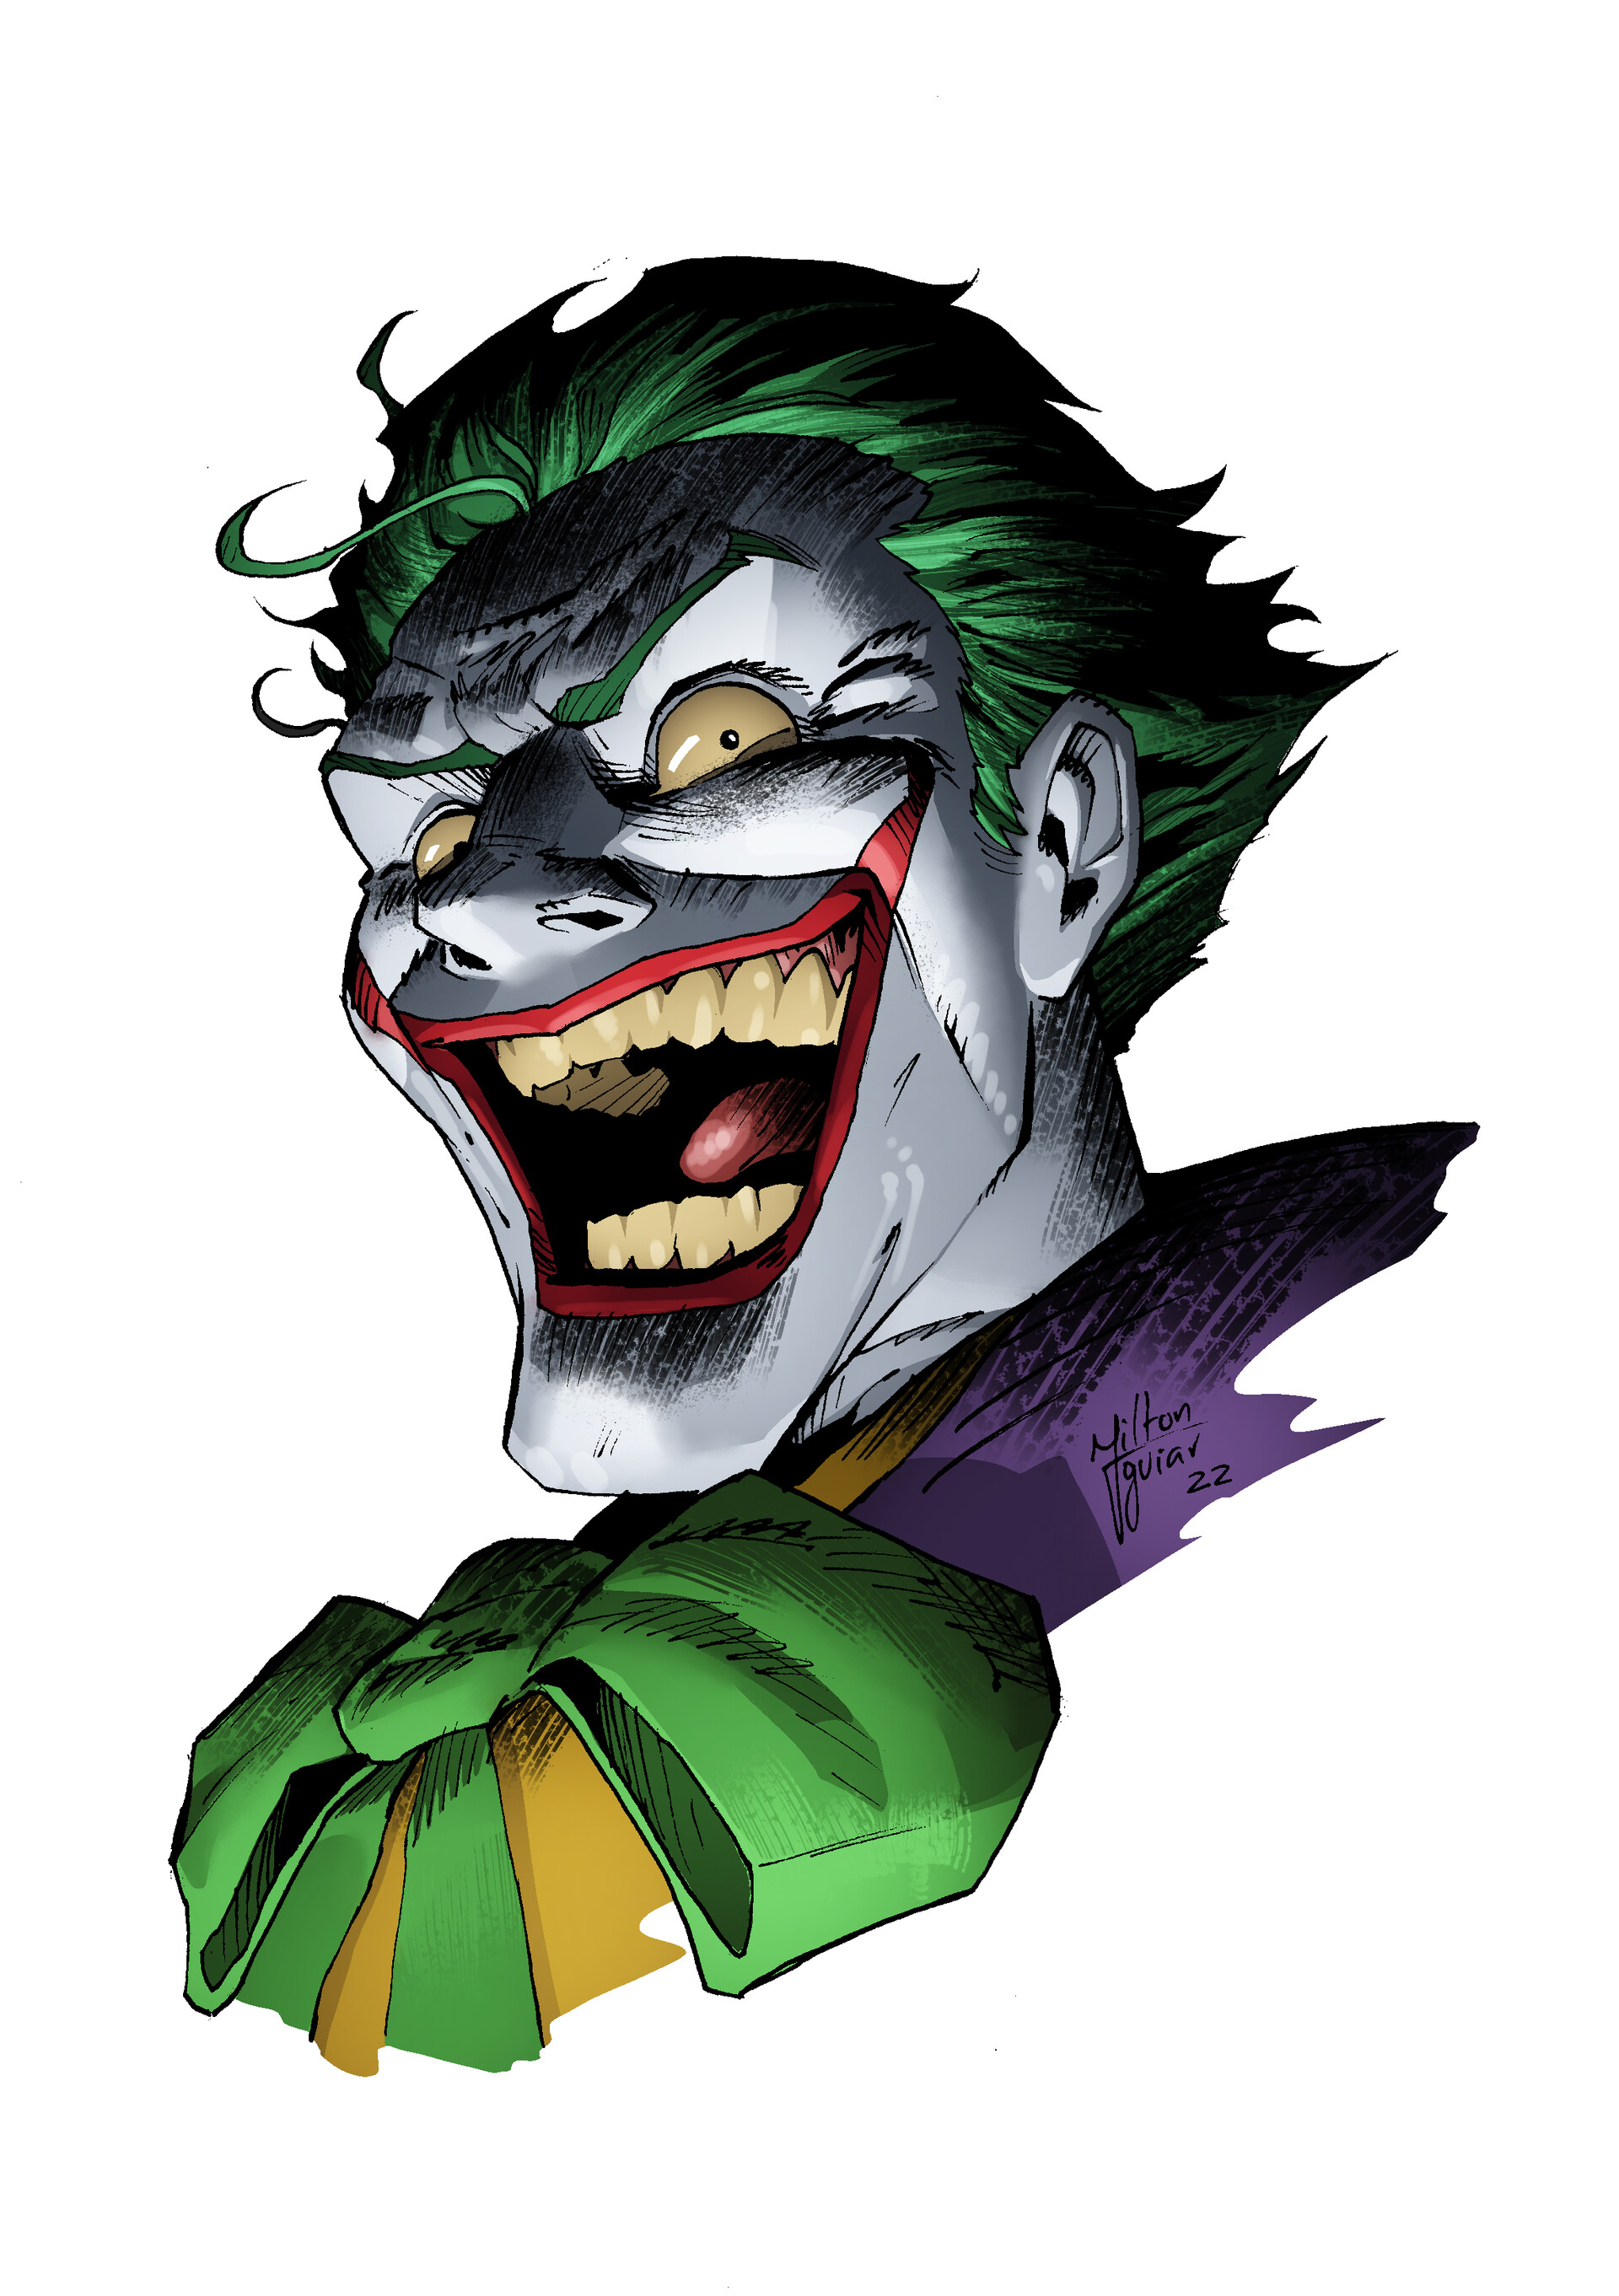 ArtStation - Joker Artwork